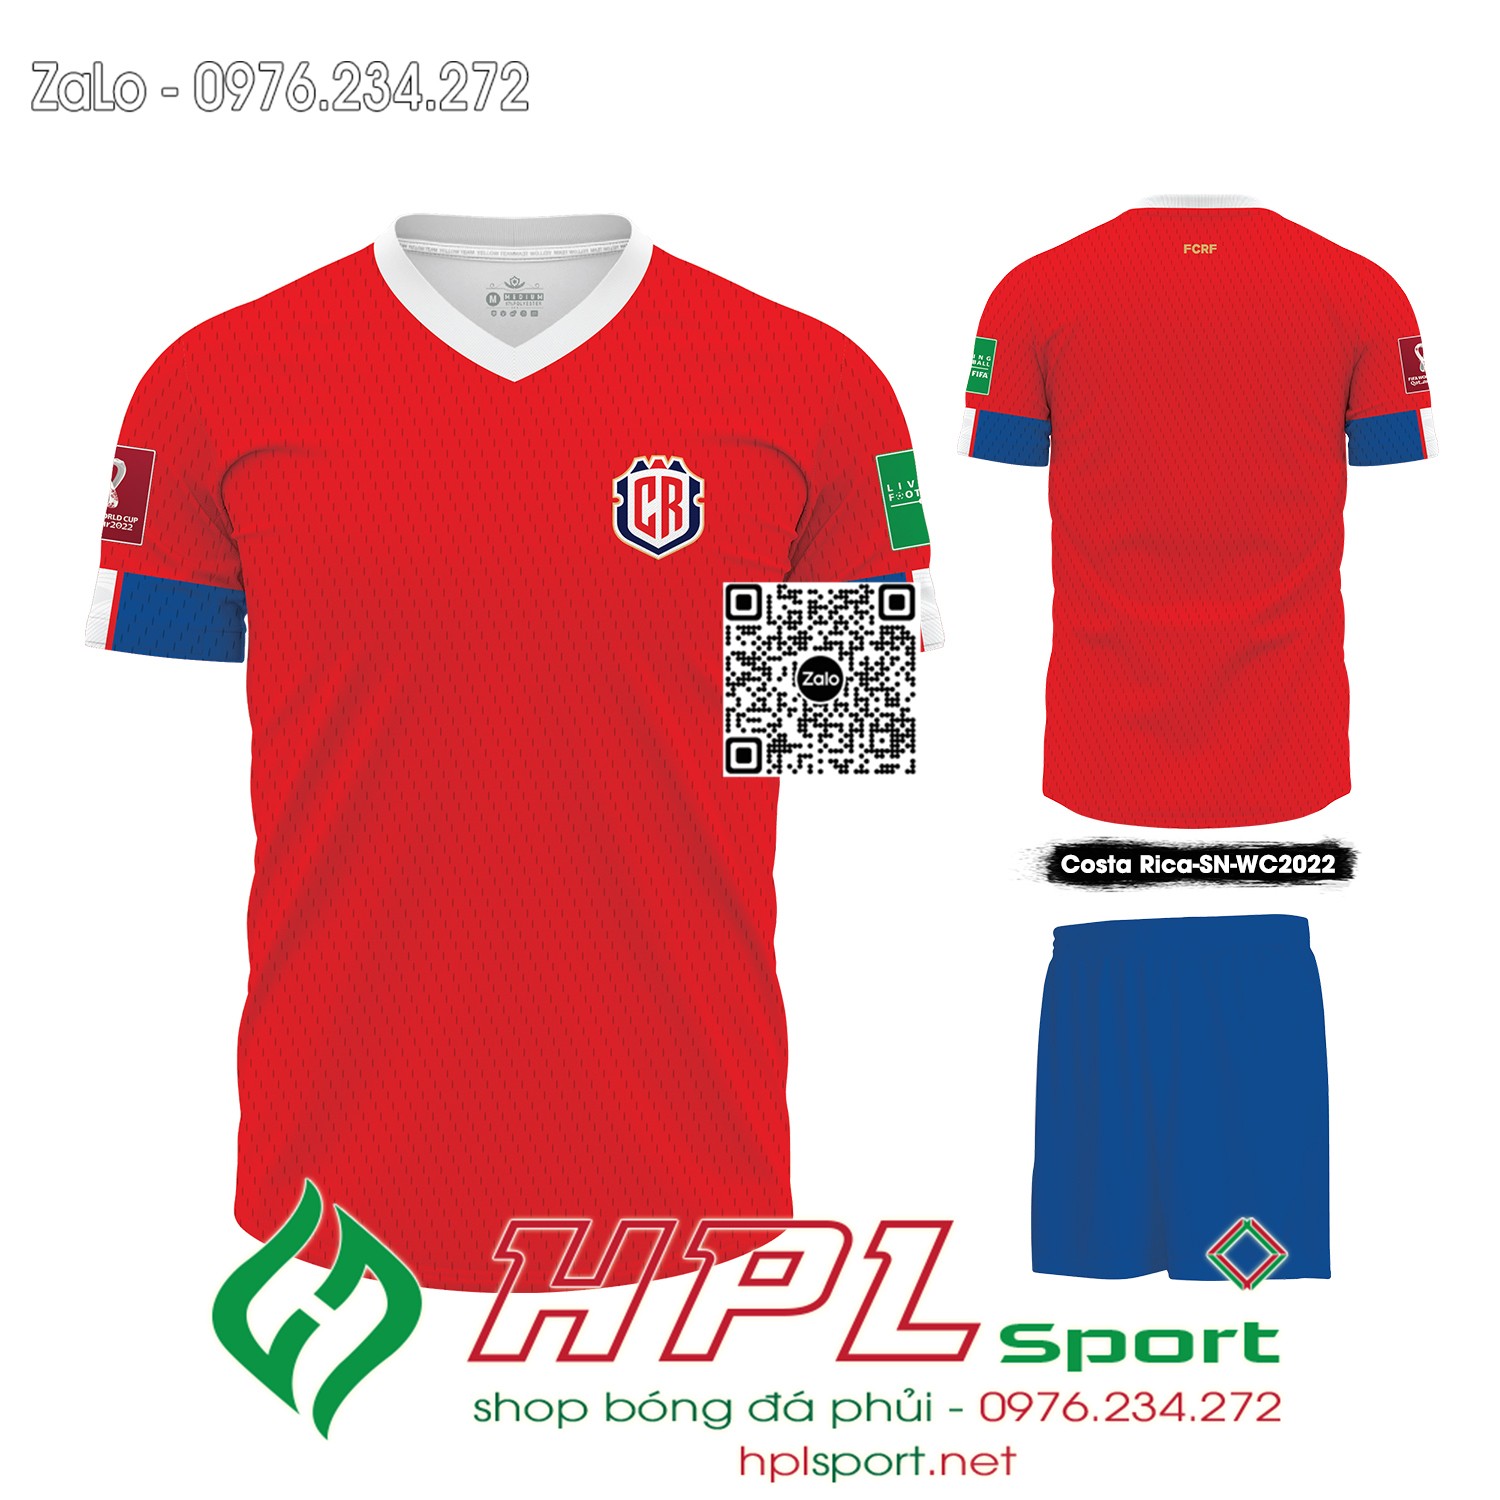 Mẫu áo đấu đội tuyển Costa Rica sân nhà màu đỏ